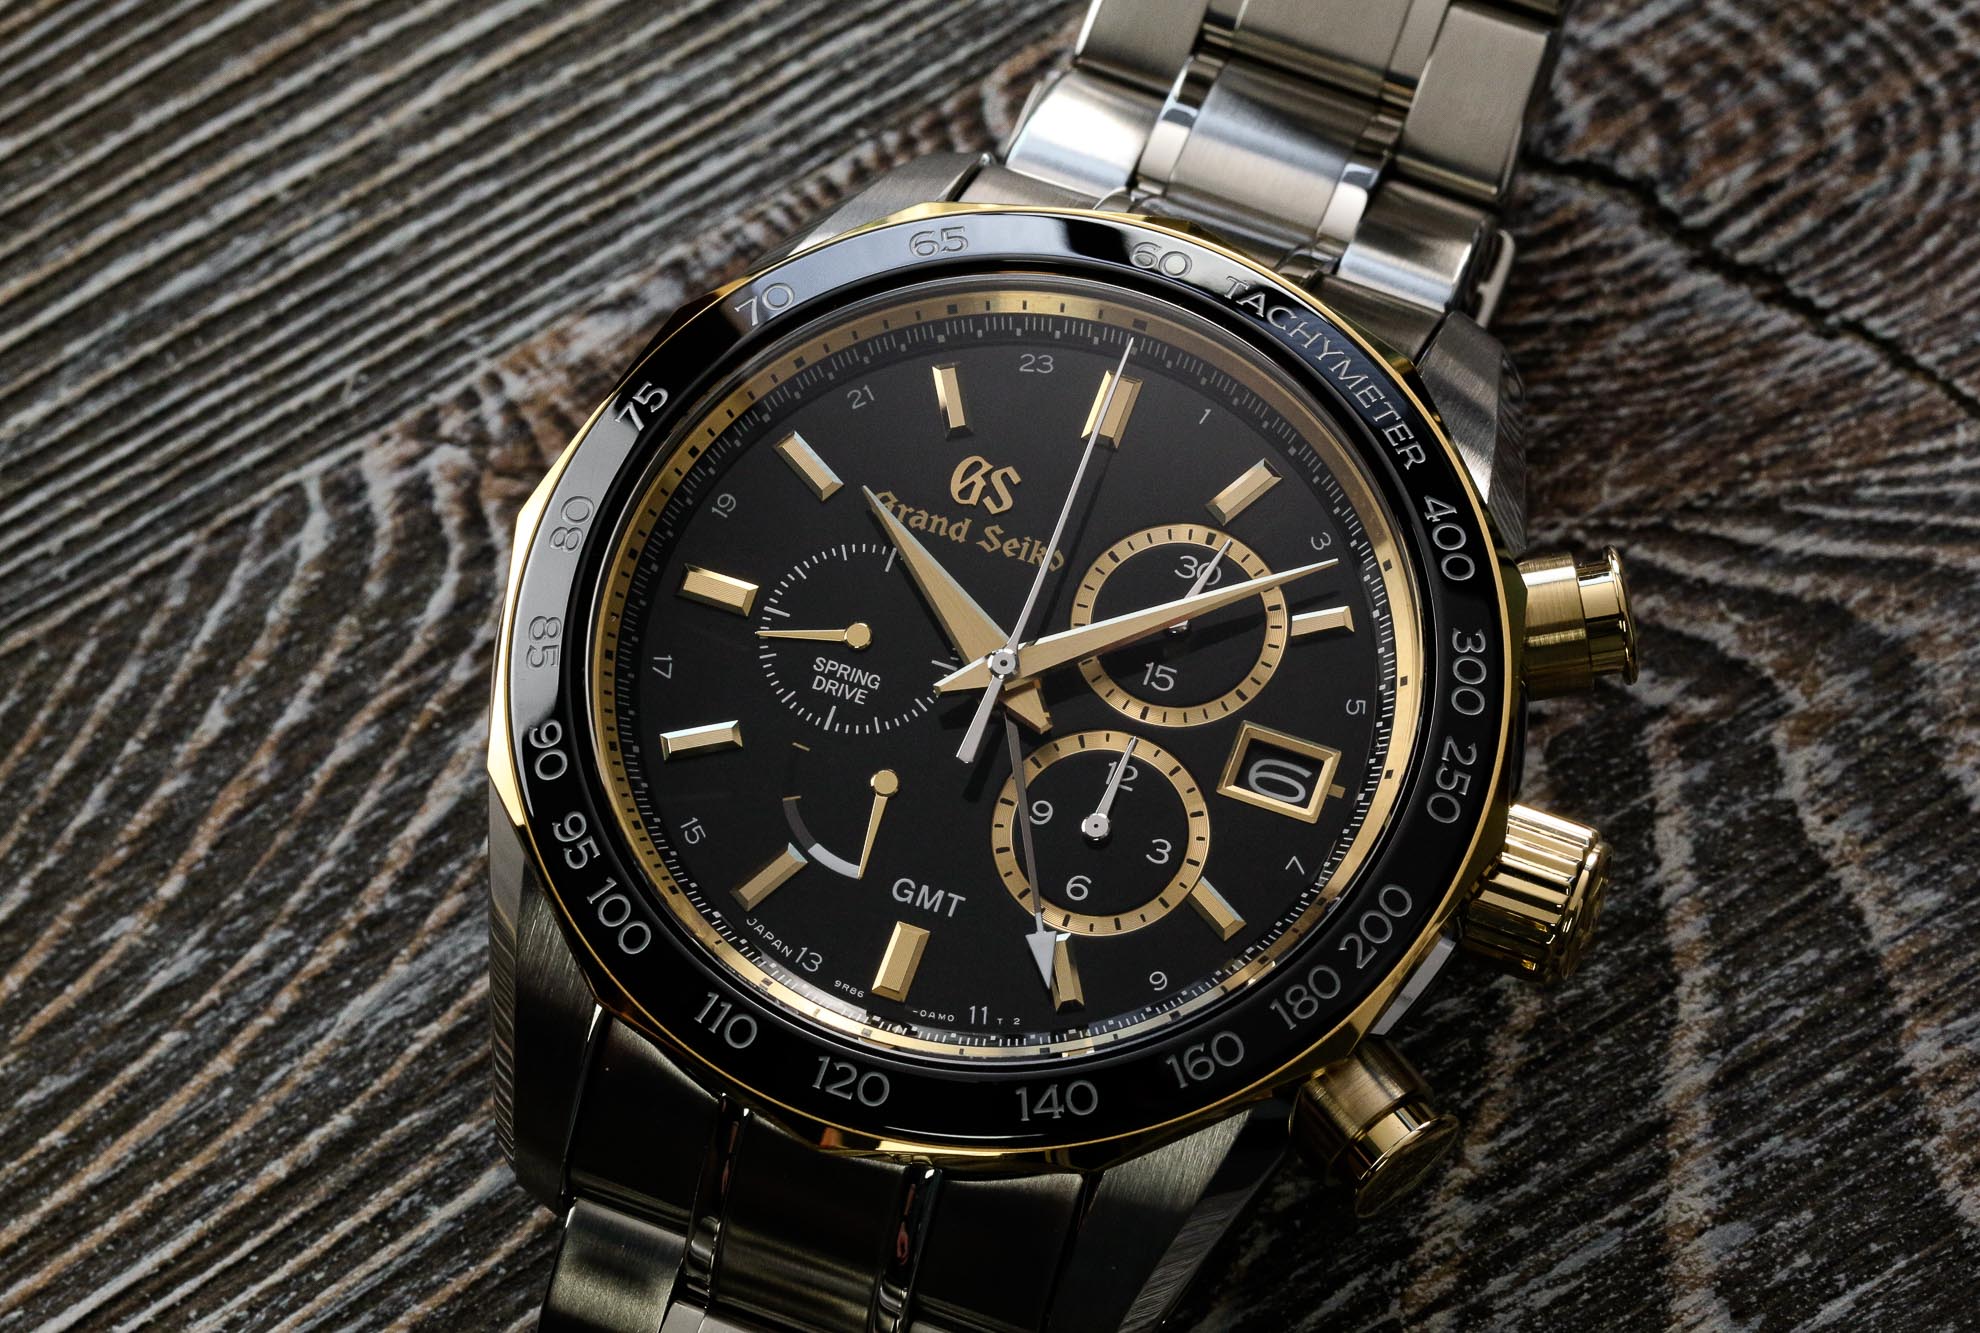 Grand Seiko SBGC240 steel and gold chronograph